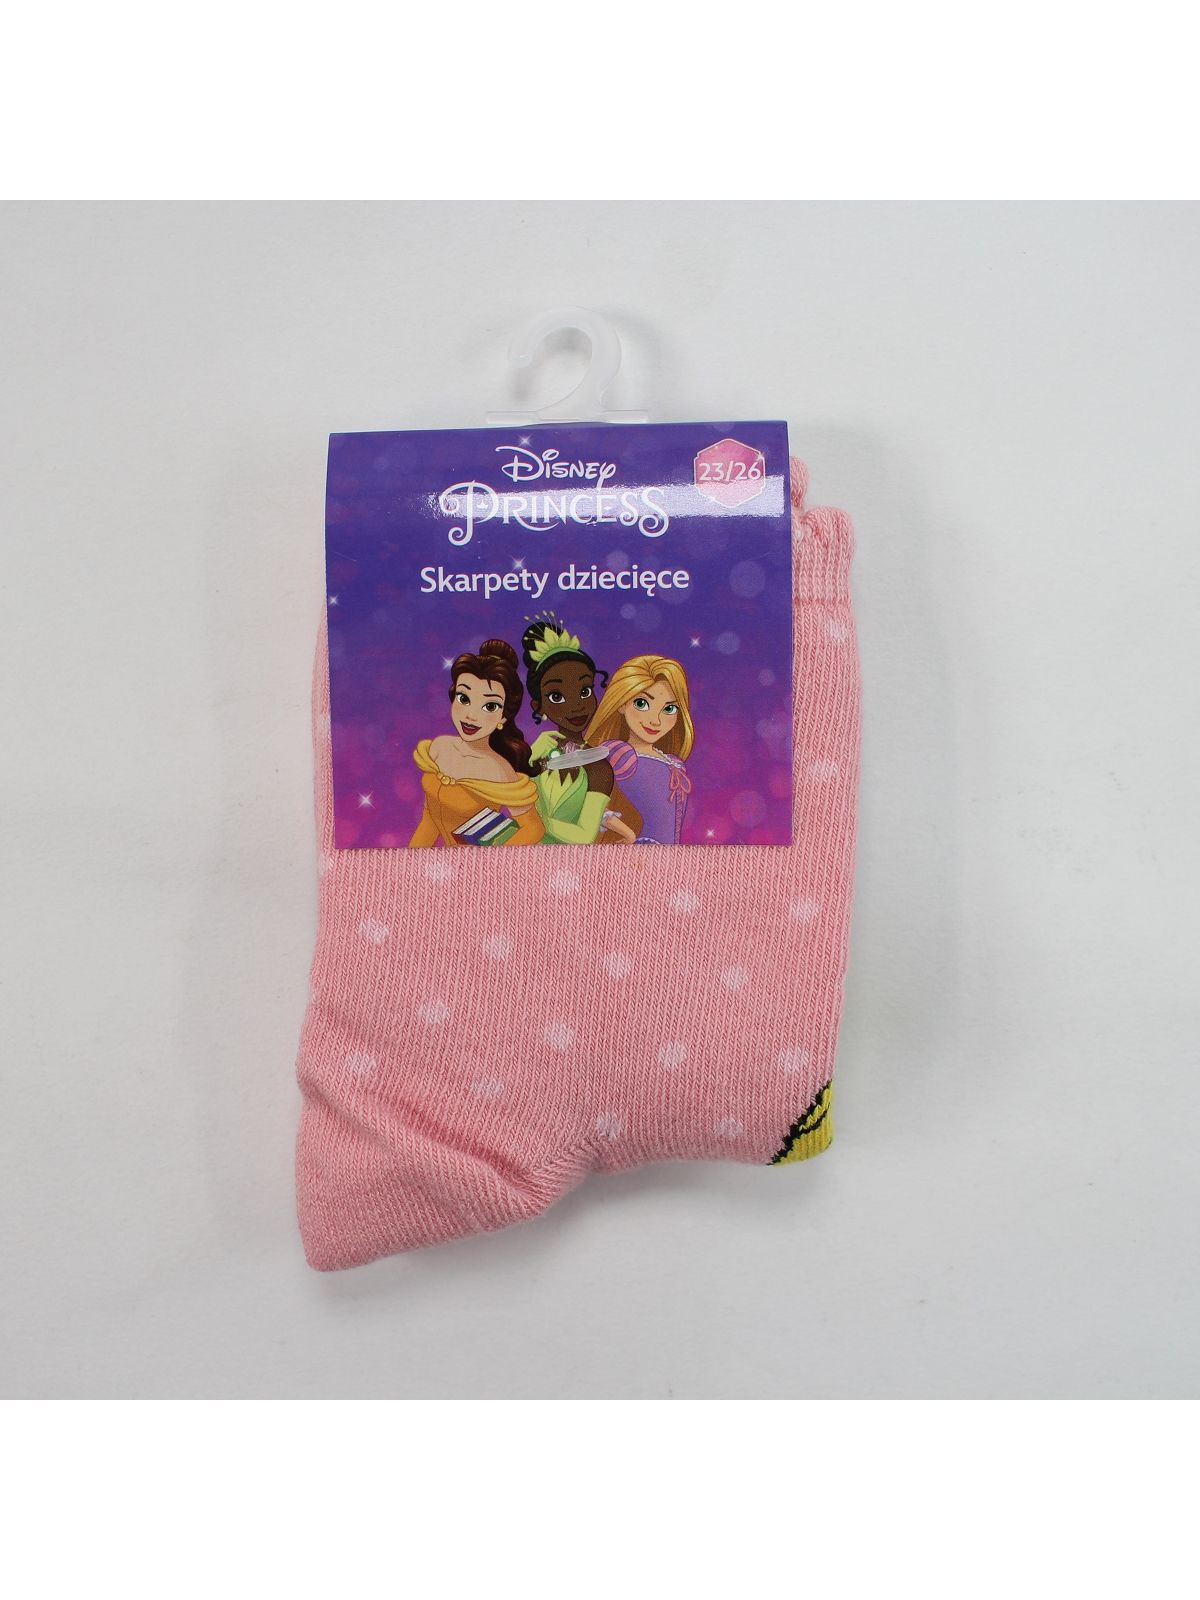 Princesse Paar Socken